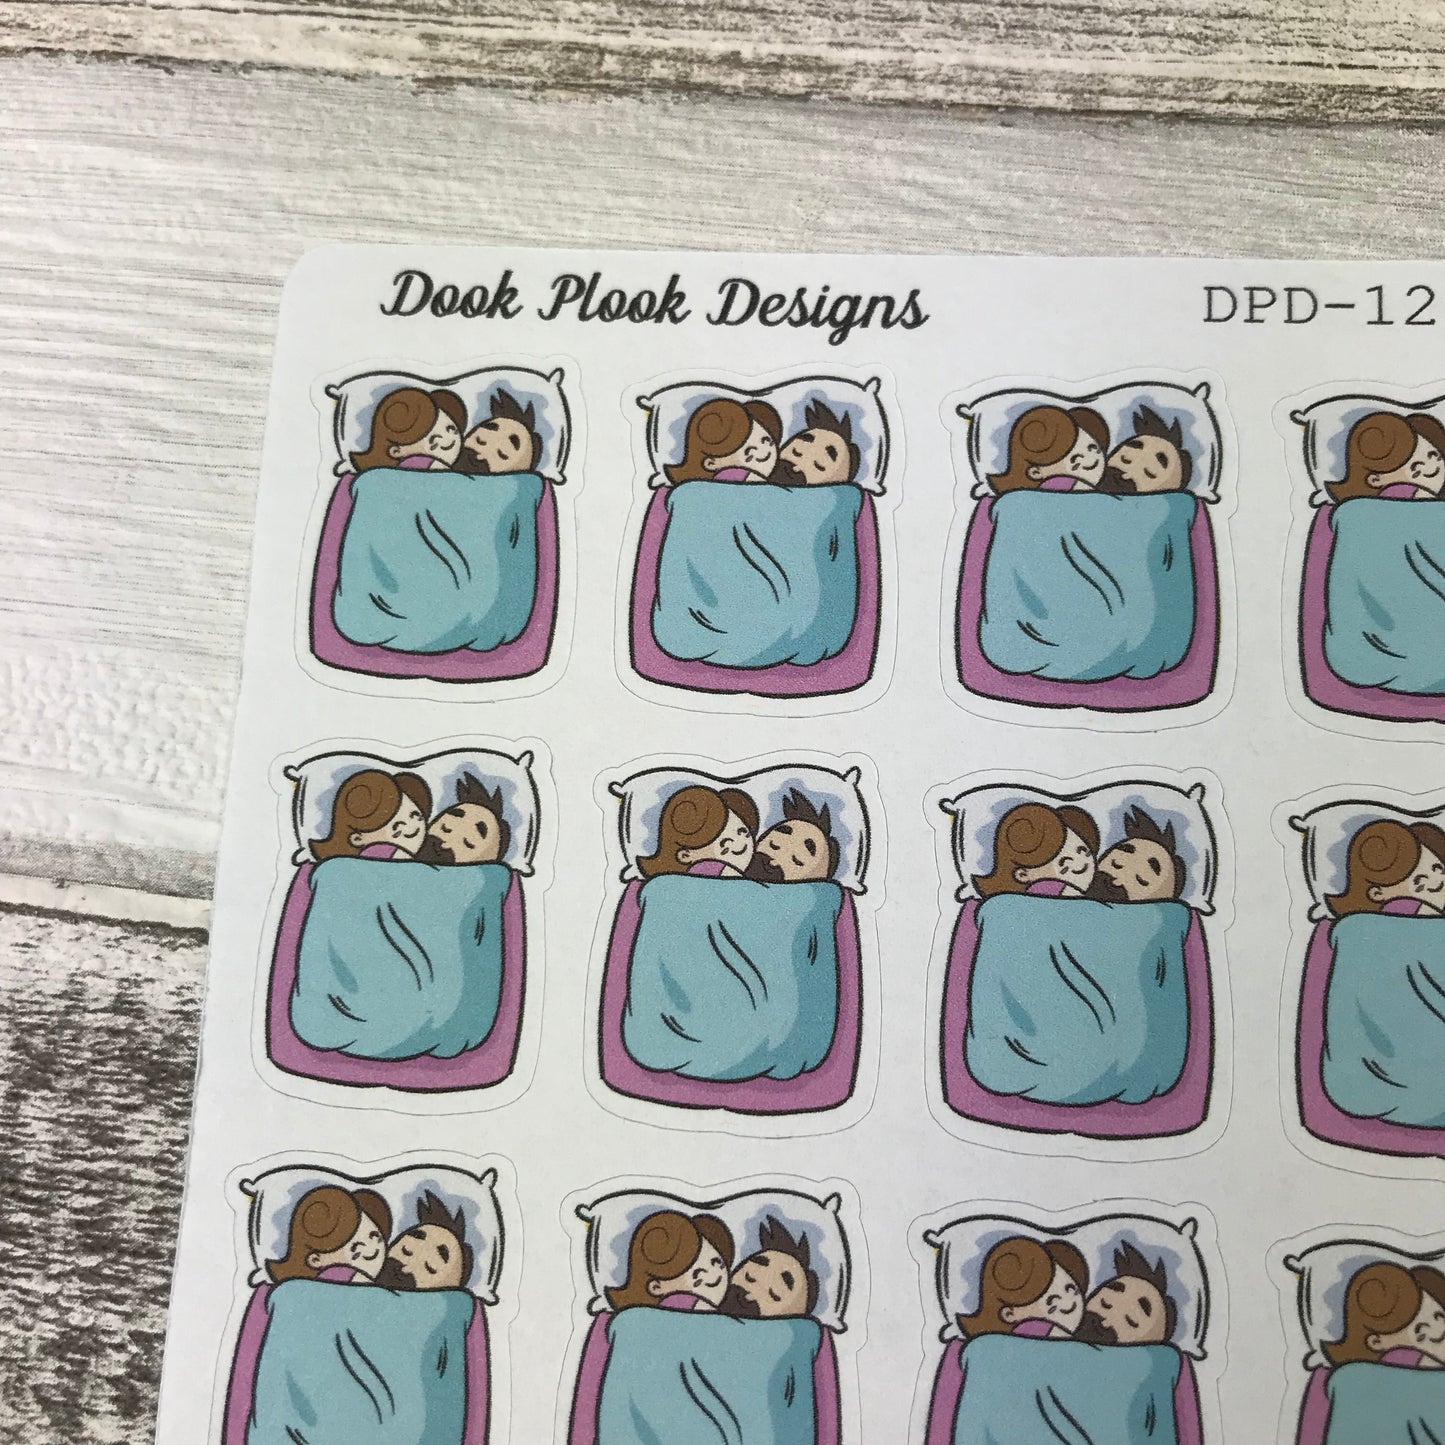 Couple sleepover stickers (DPD 1205)